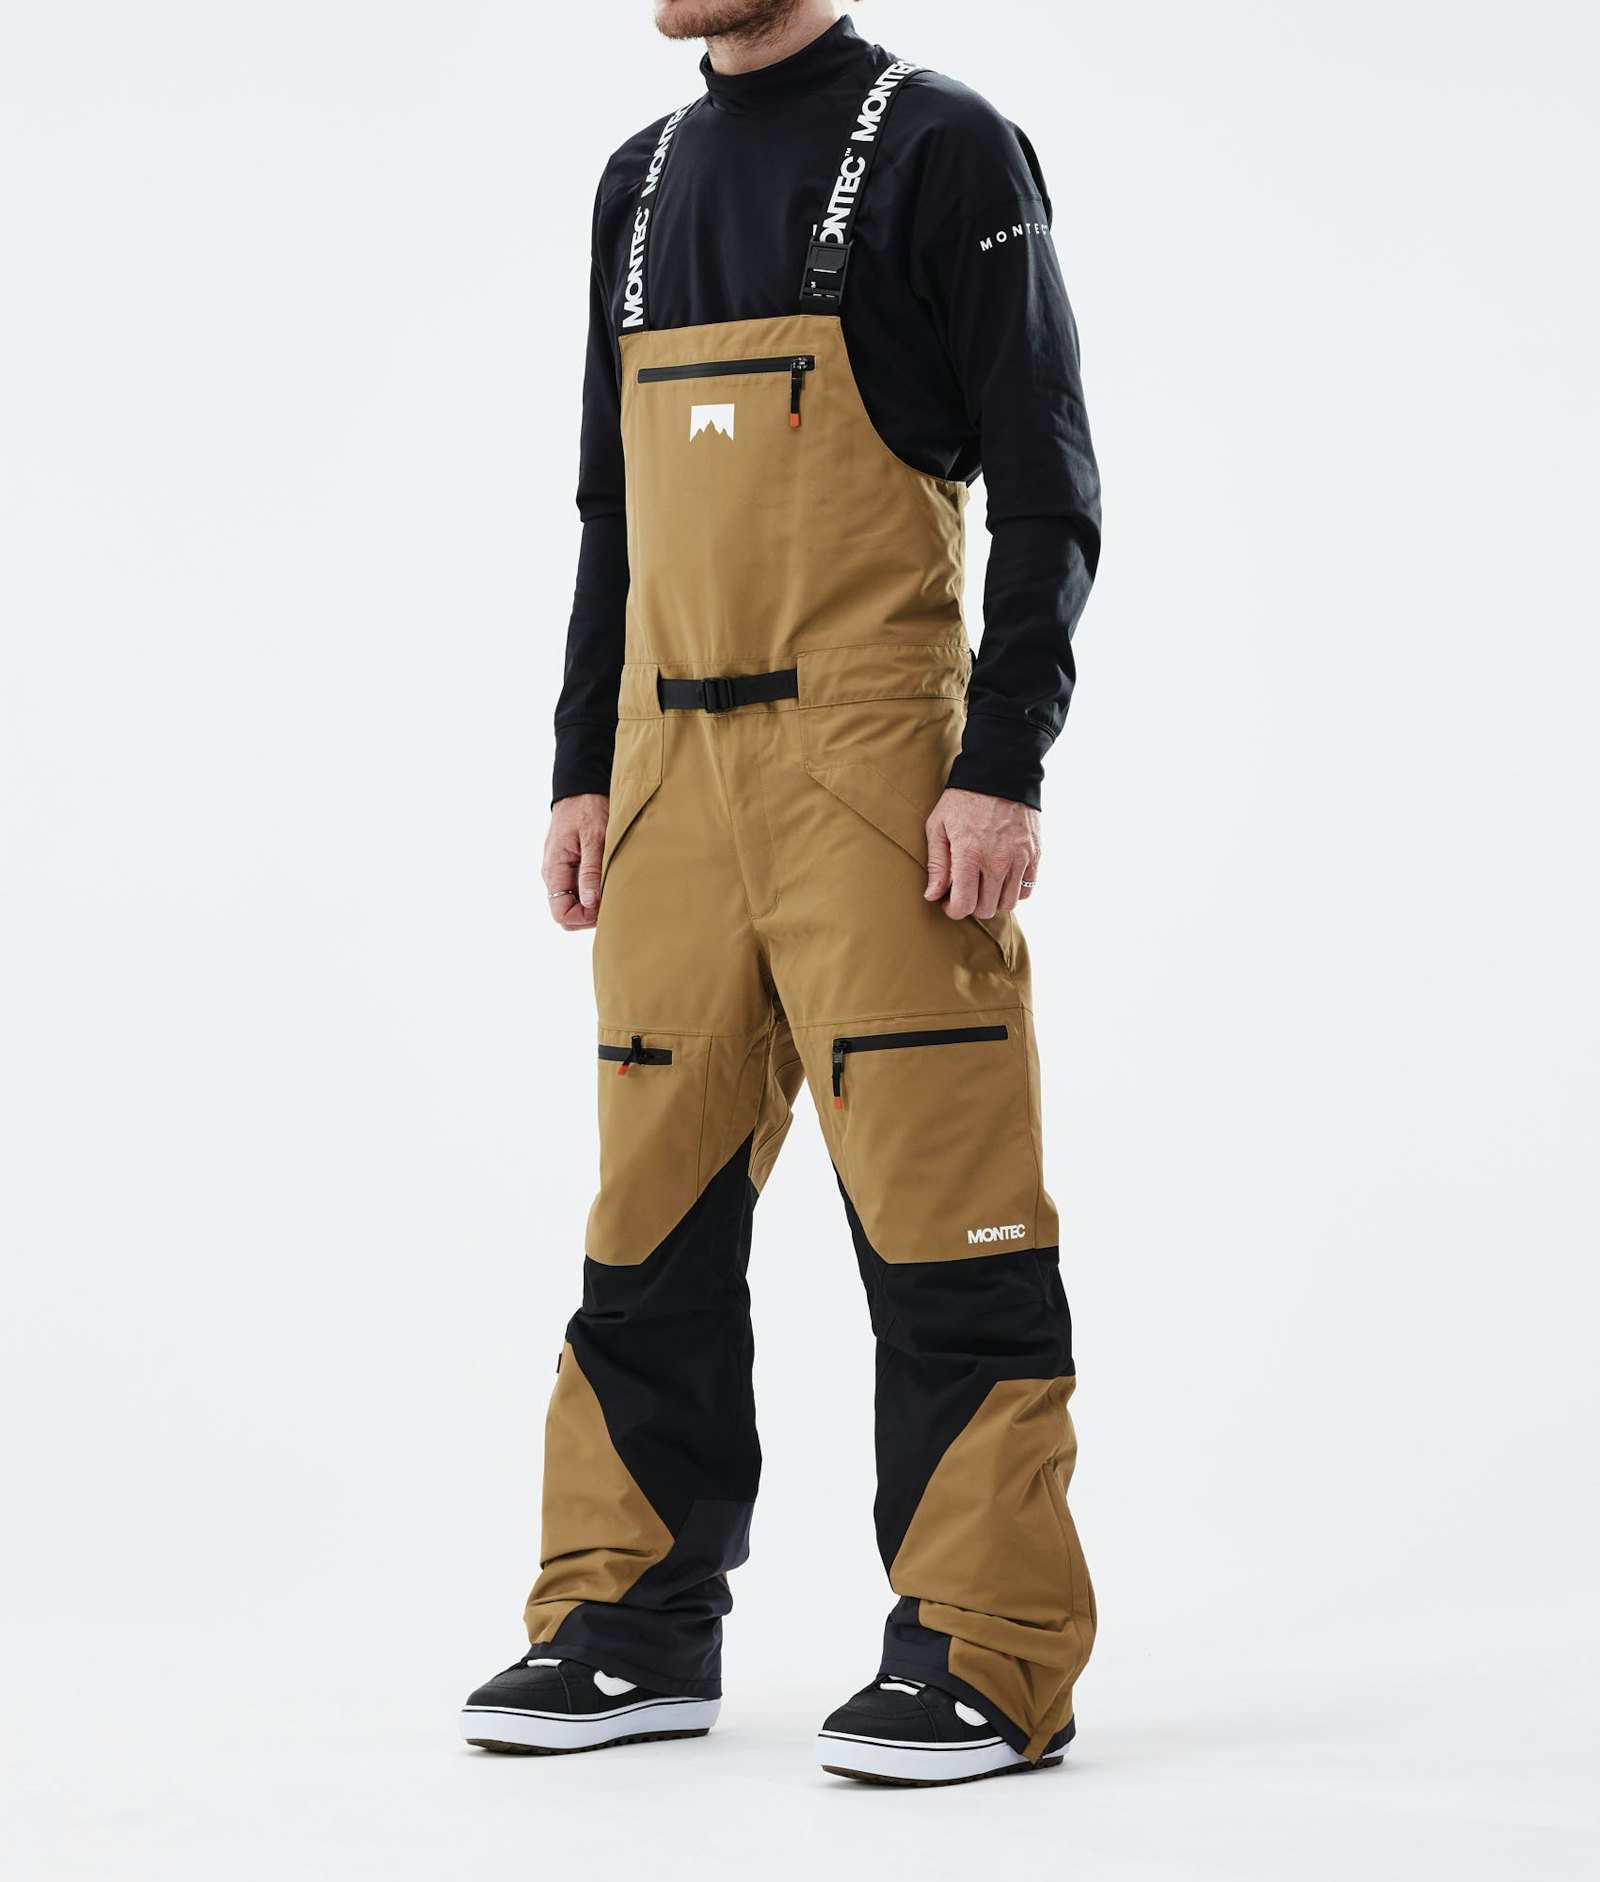 Montec Moss 2021 Pantalones Snowboard Hombre Gold/Black